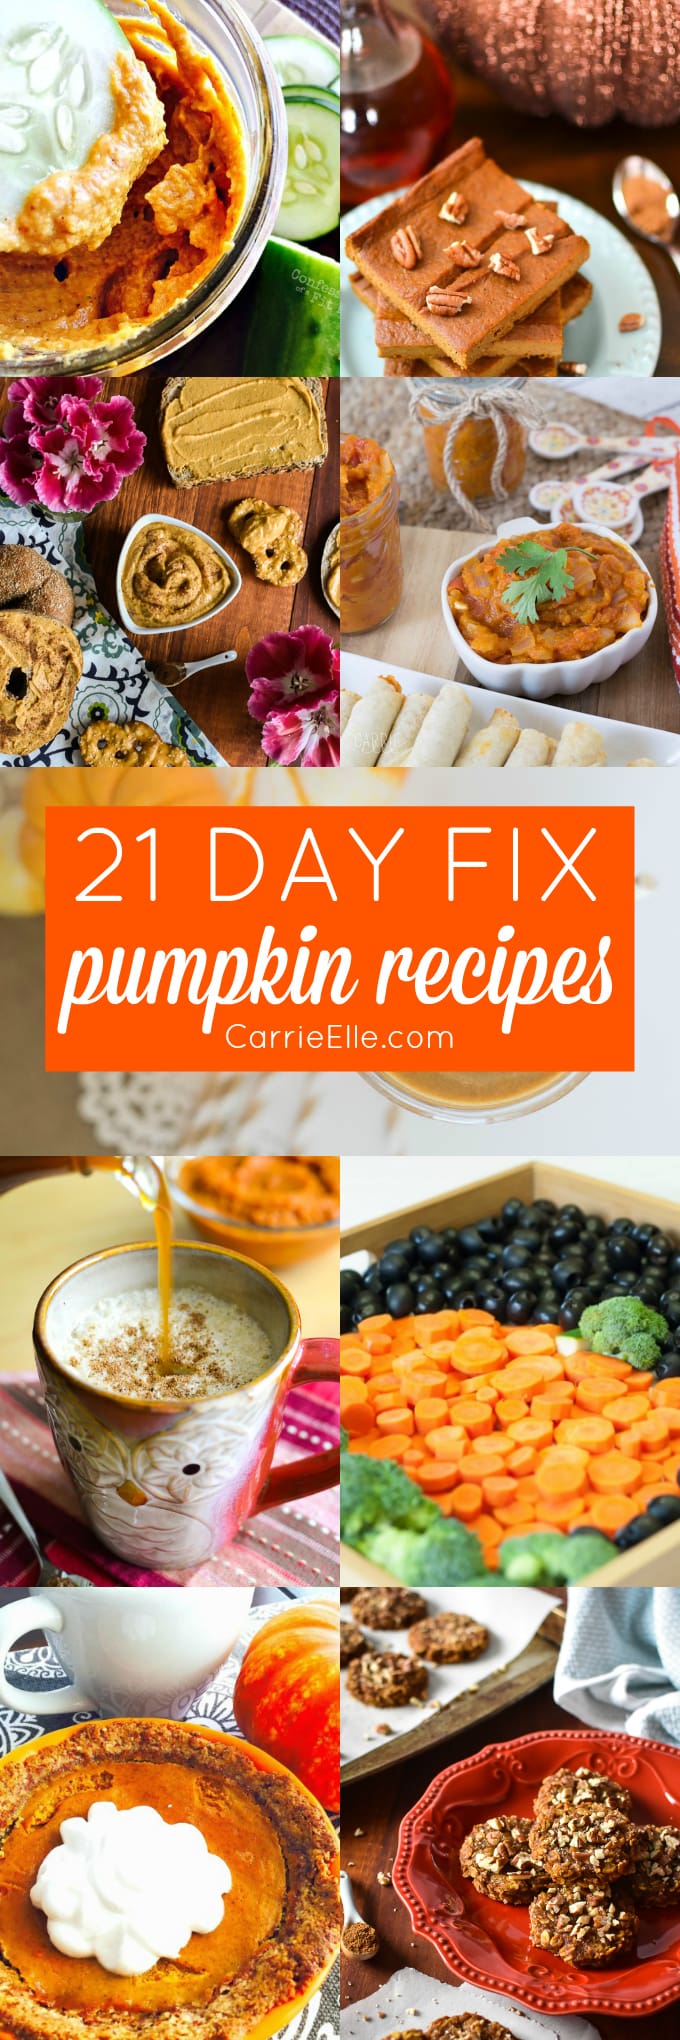 21 Day Fix Pumpkin Recipes